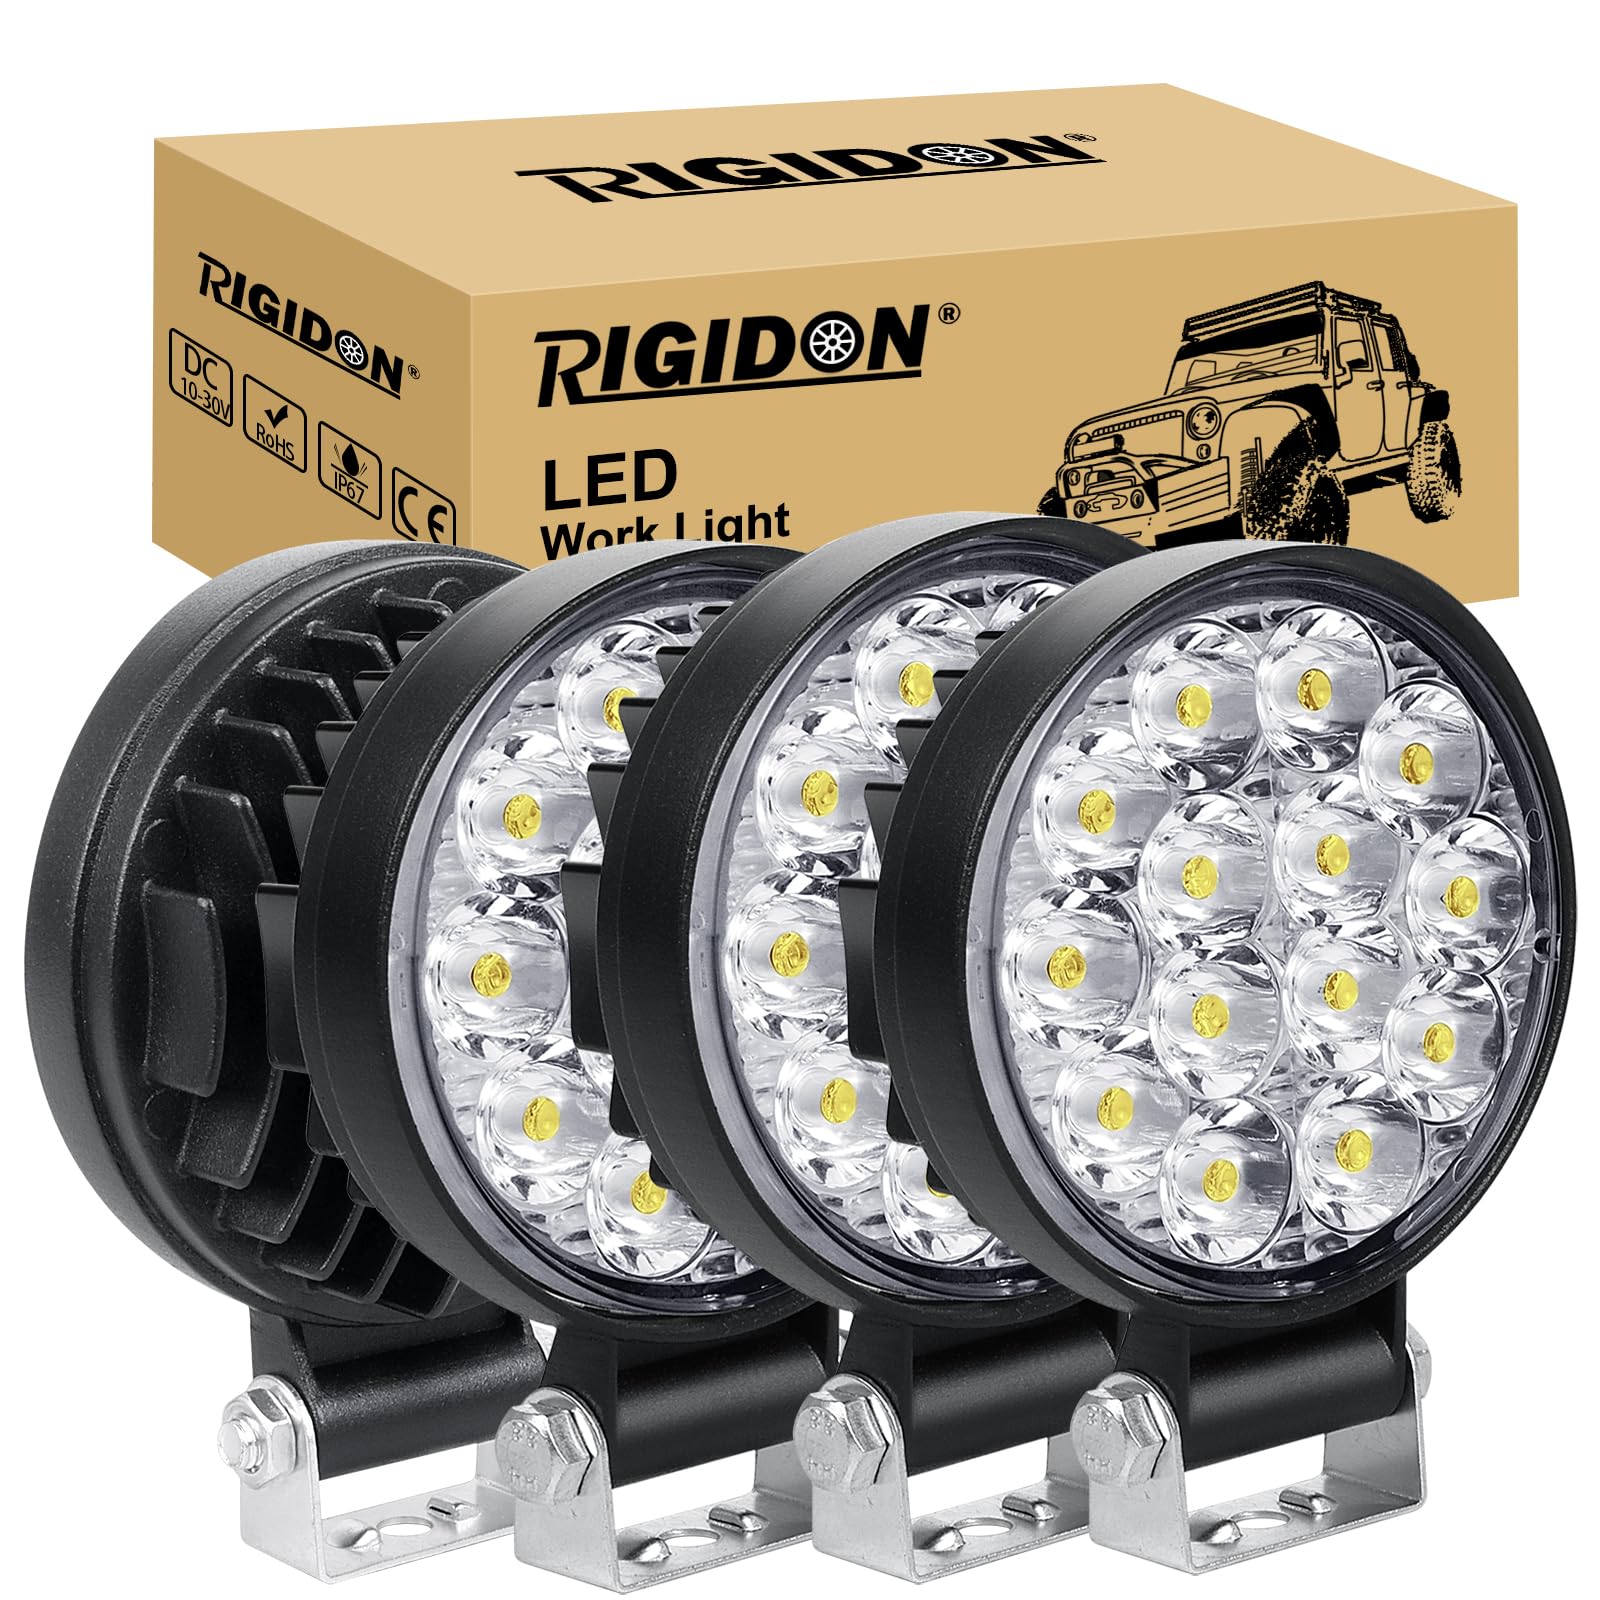 RIGIDON 4 Pcs Auto rund scheinwerfer, 3.2 Zoll mini 42W Spot Strahler offroad beleuchtung für SUV ATV Traktor LKW 4x4, 6000K Weiß led nebelscheinwerfer, led arbeitsscheinwerfer, led arbeitslicht von RIGIDON